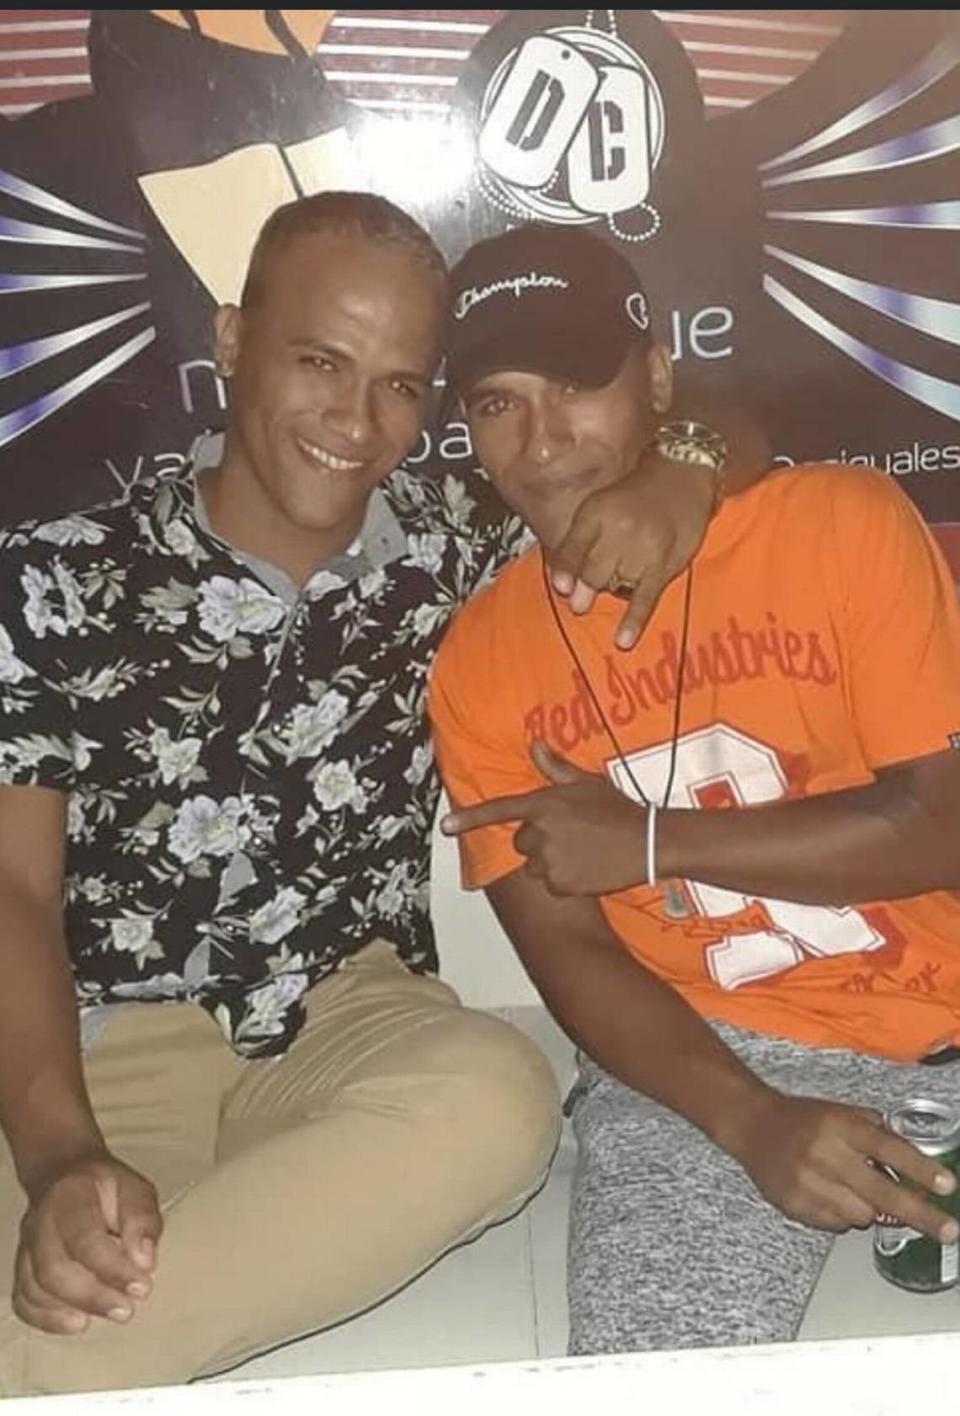 Marioluis y Luismario Hernandez Berrio, gemelos idénticos que desaparecieron durante un viaje en barco desde Cuba a los Estados Unidos a finales de diciembre. Miembro de la familia